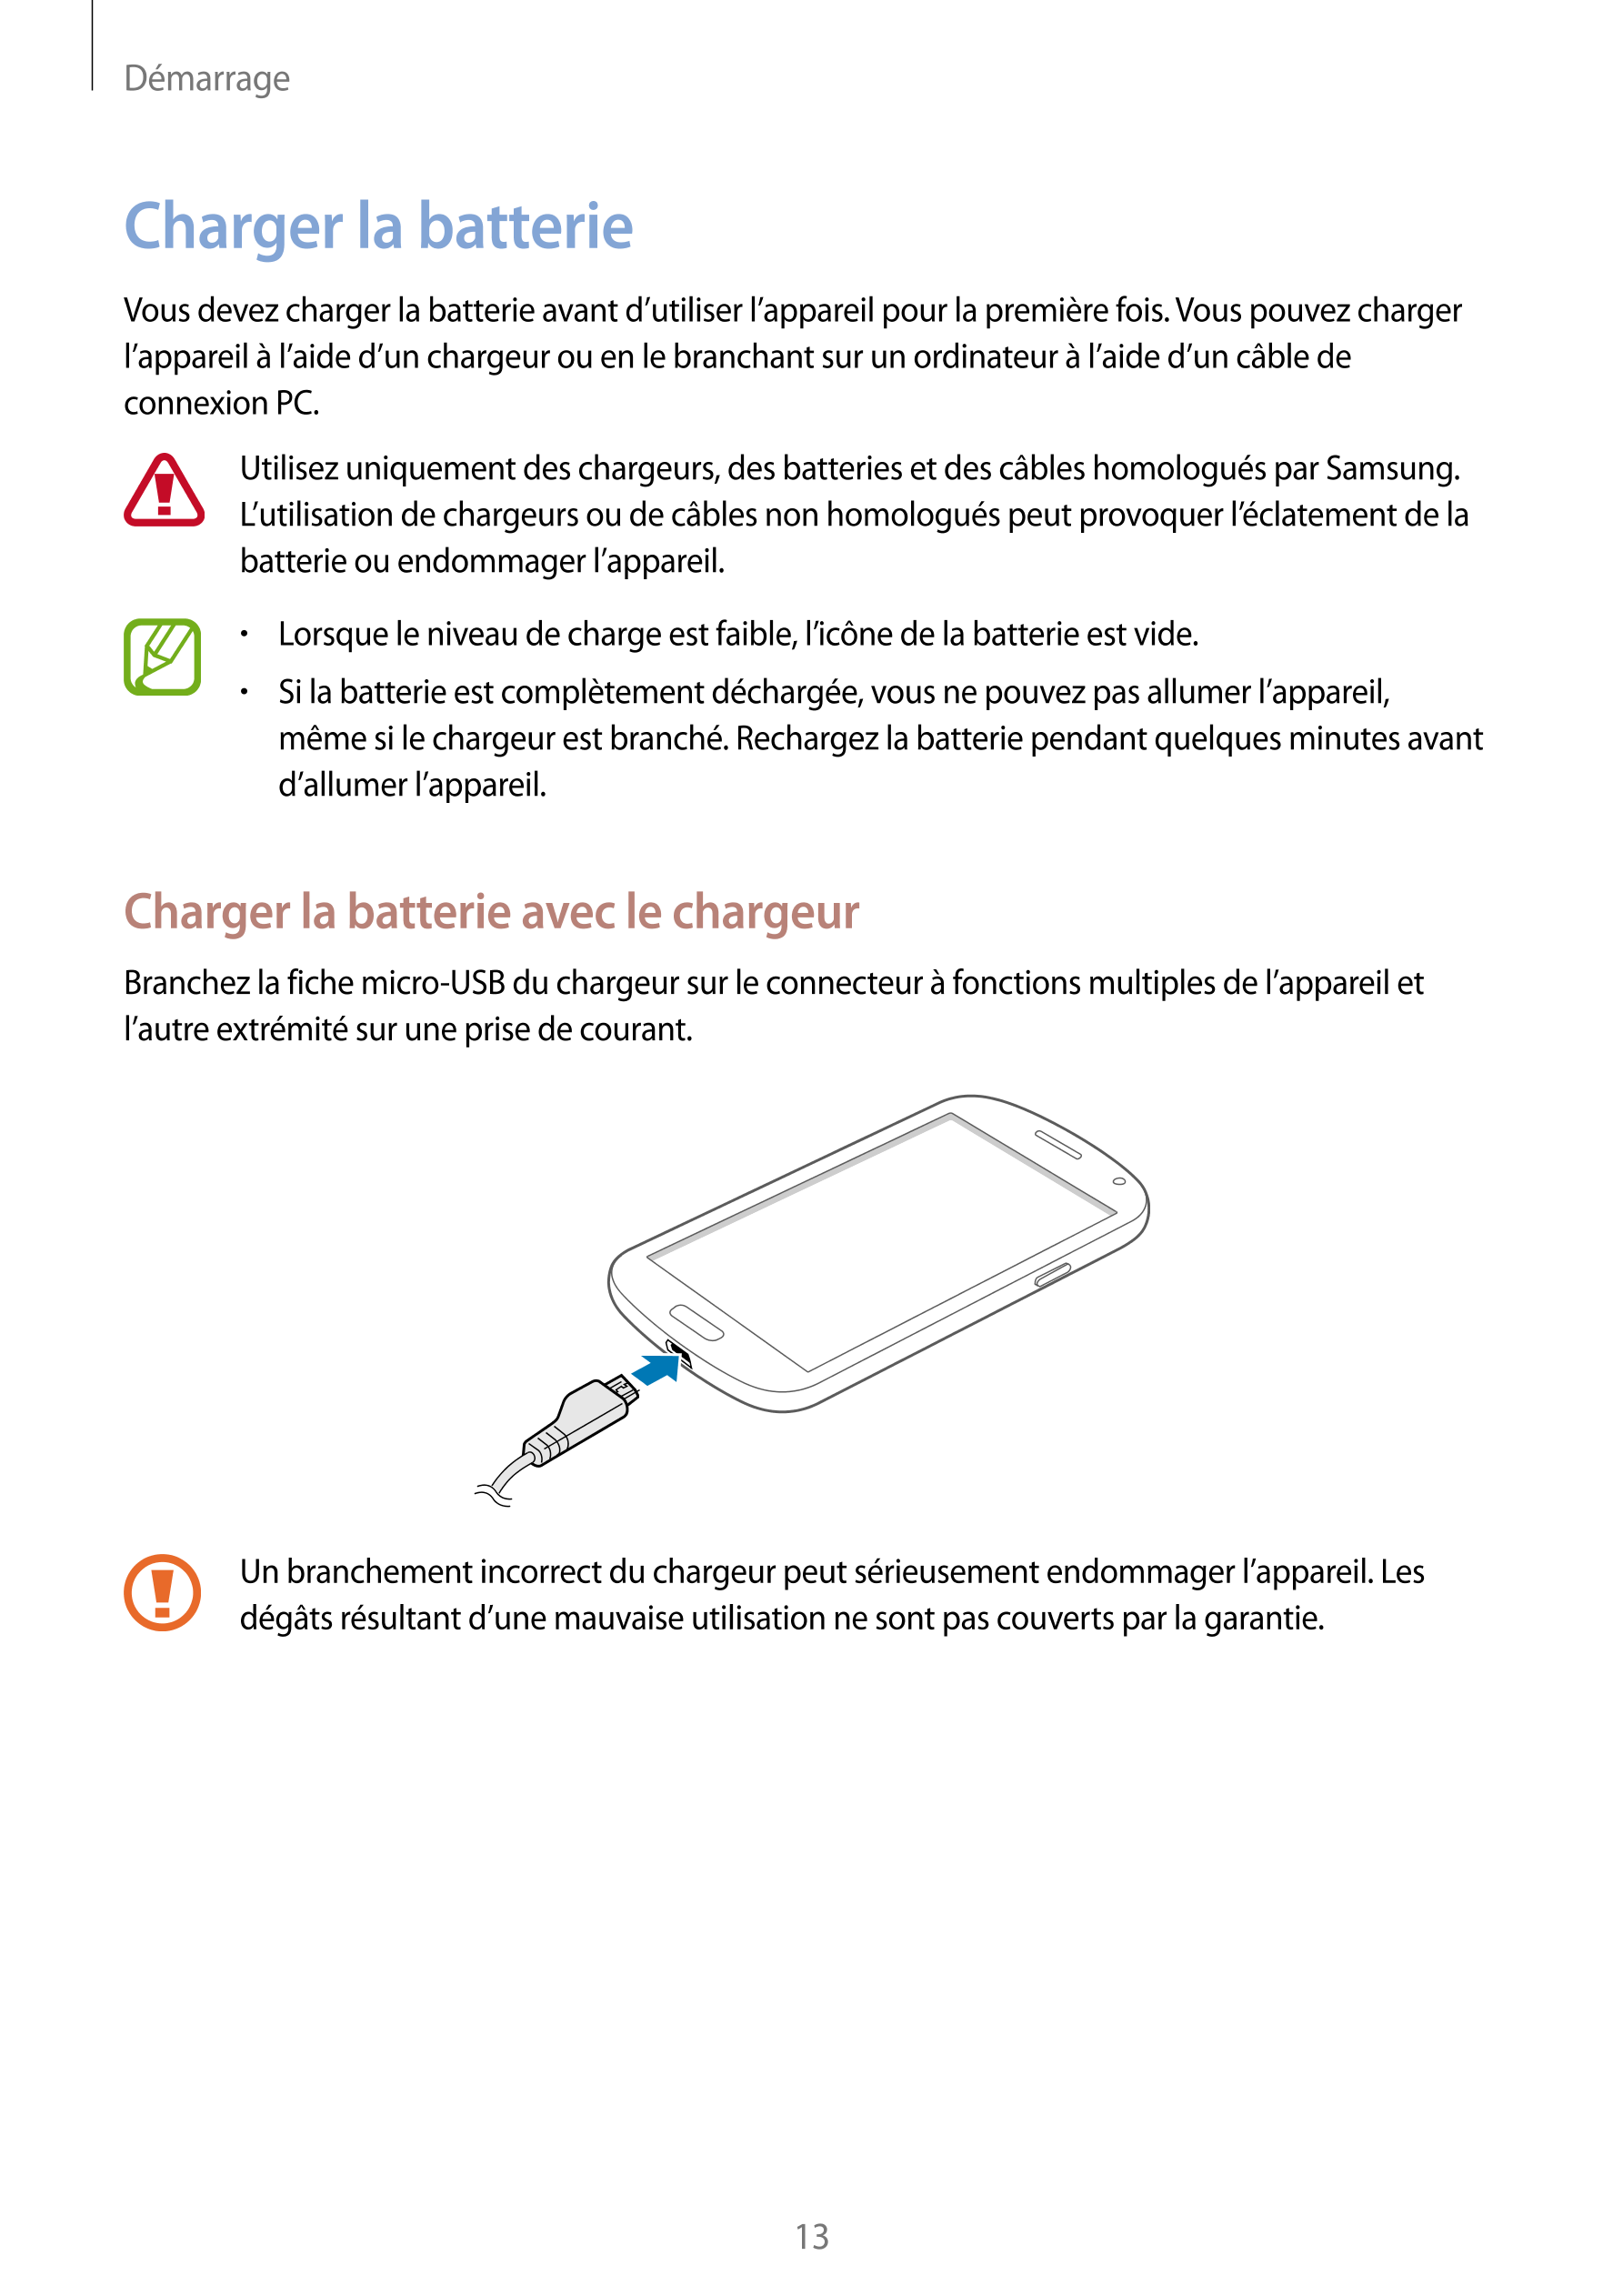 Démarrage
Charger la batterie
Vous devez charger la batterie avant d’utiliser l’appareil pour la première fois. Vous pouvez char